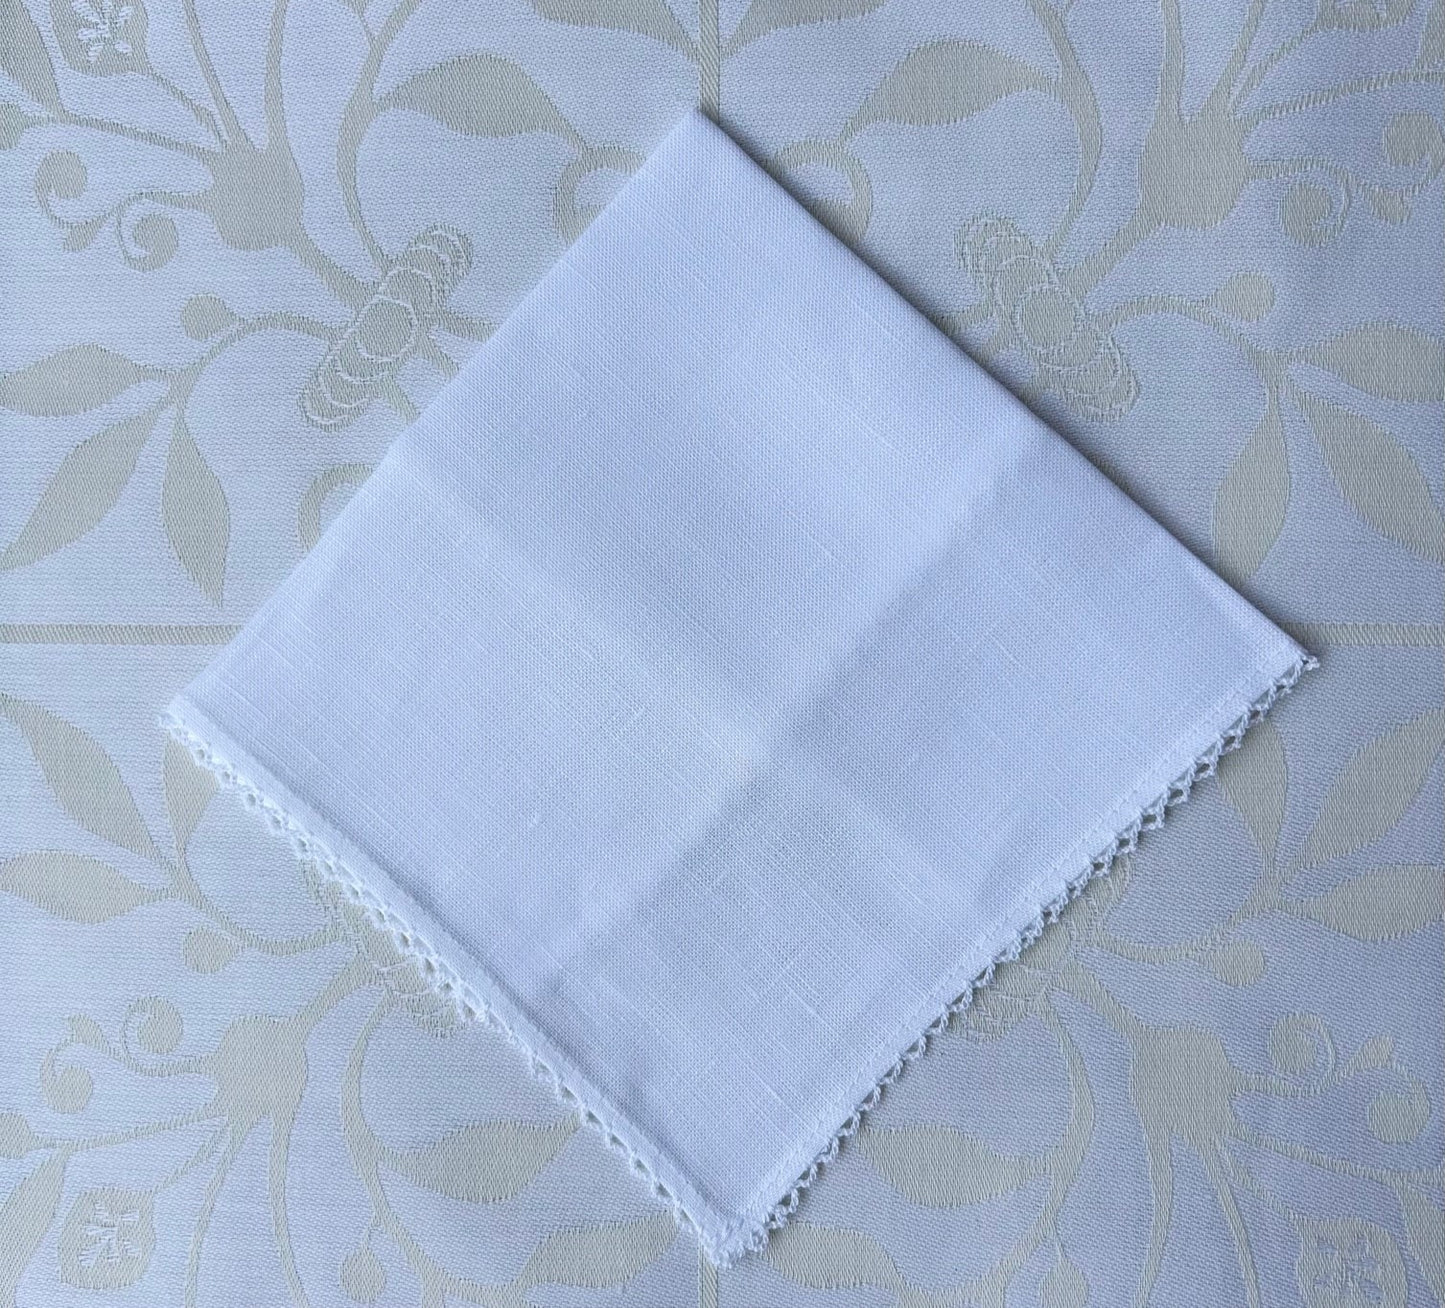 Handkerchief Ladies - White Linen with Picot Edge